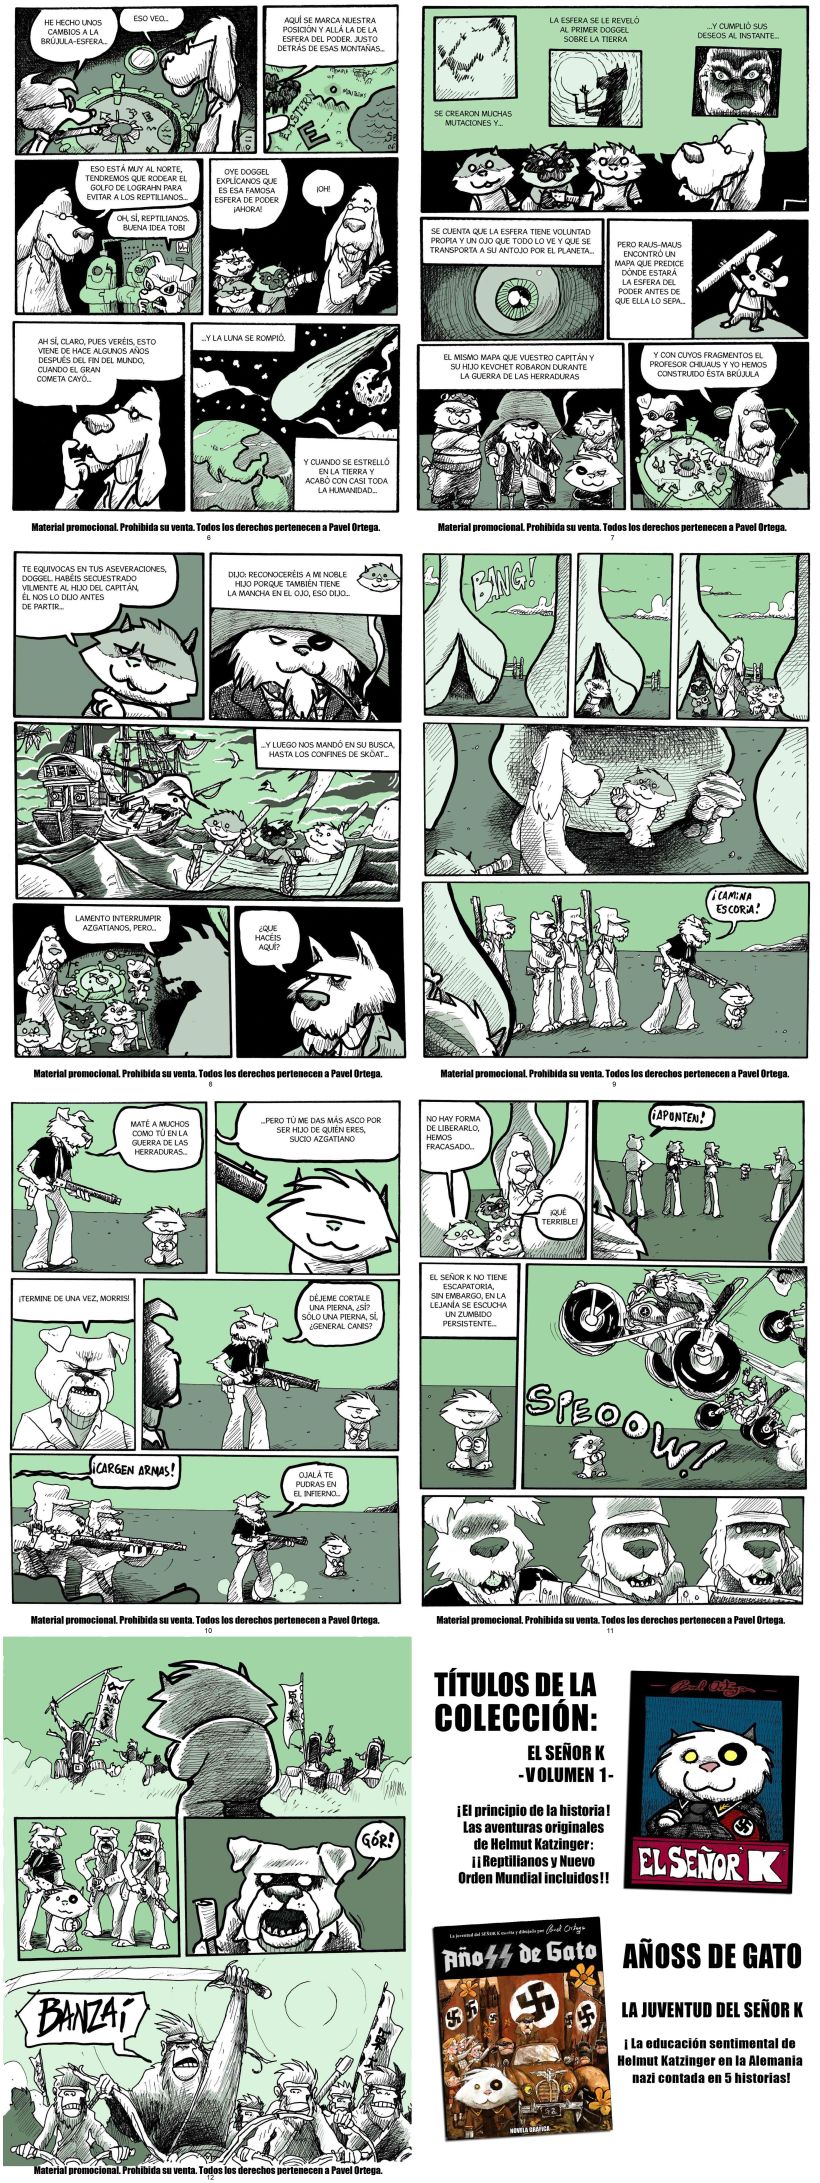 Maquetador y rotulista del cómic EL RETORNO DEL SEÑOR K 2